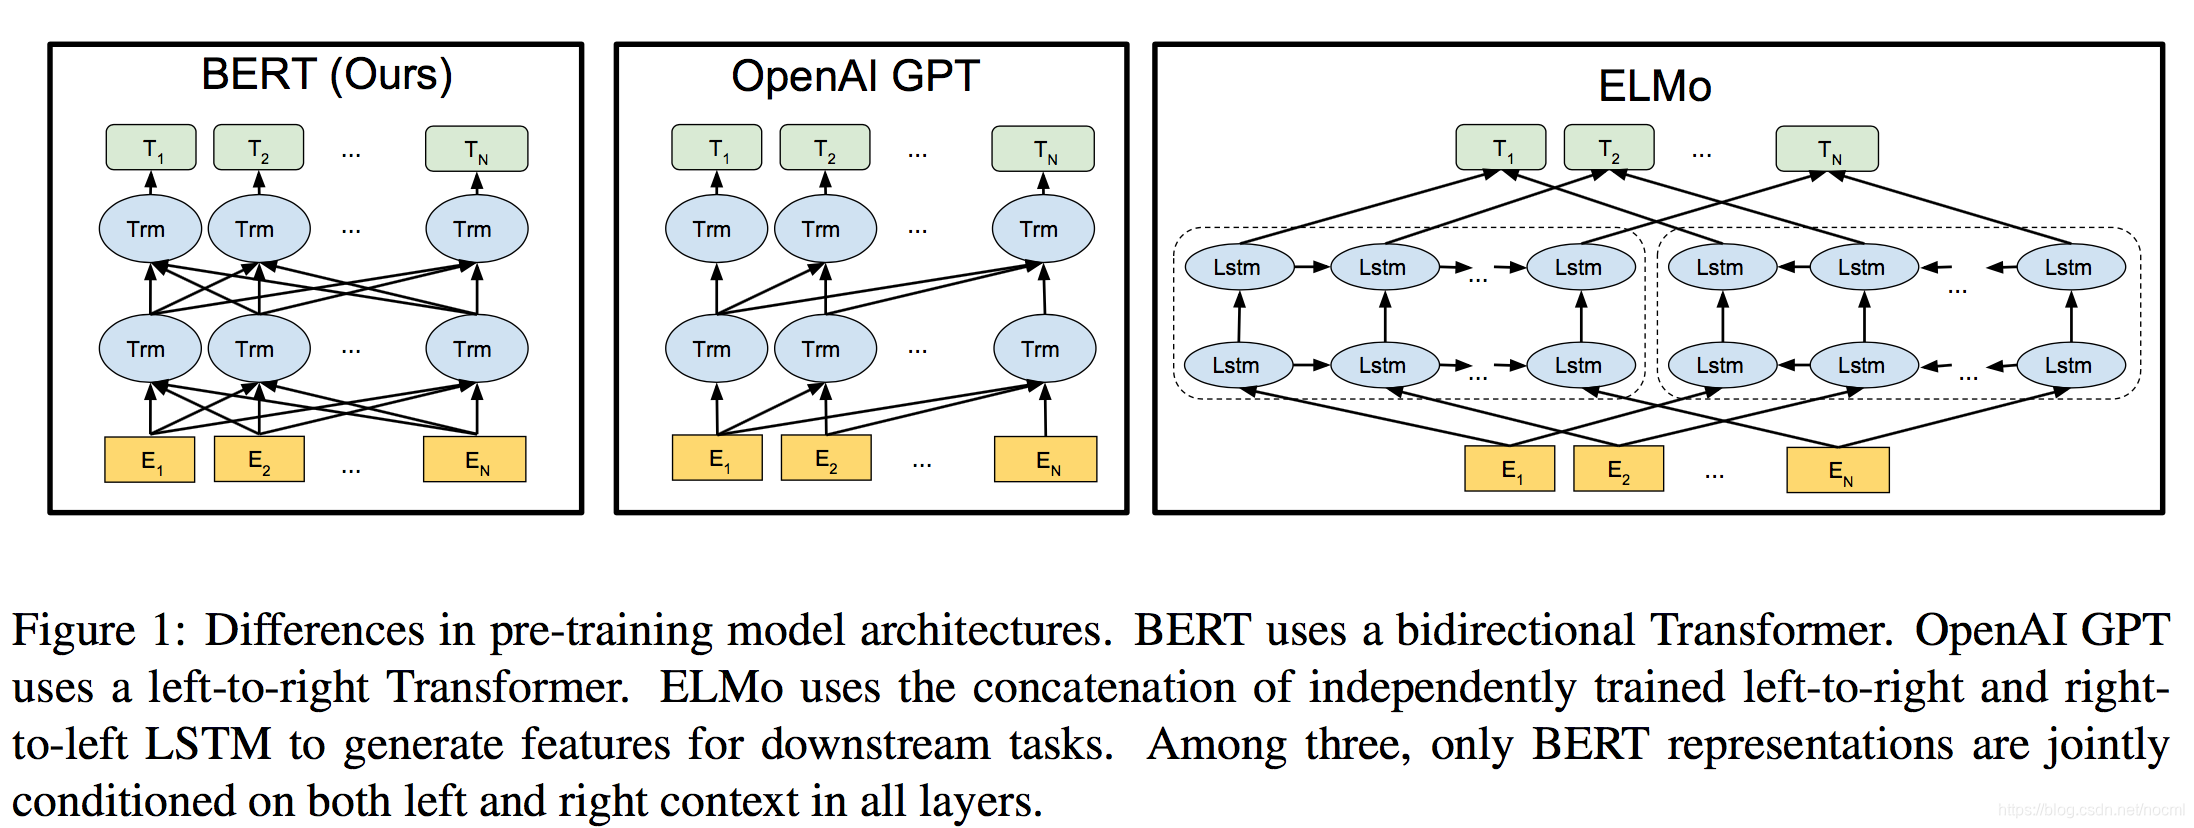 Magicslides gpt for slides. Bert архитектура сети. Модель Bert. Архитектура модели Transformer. Bert нейронная сеть.